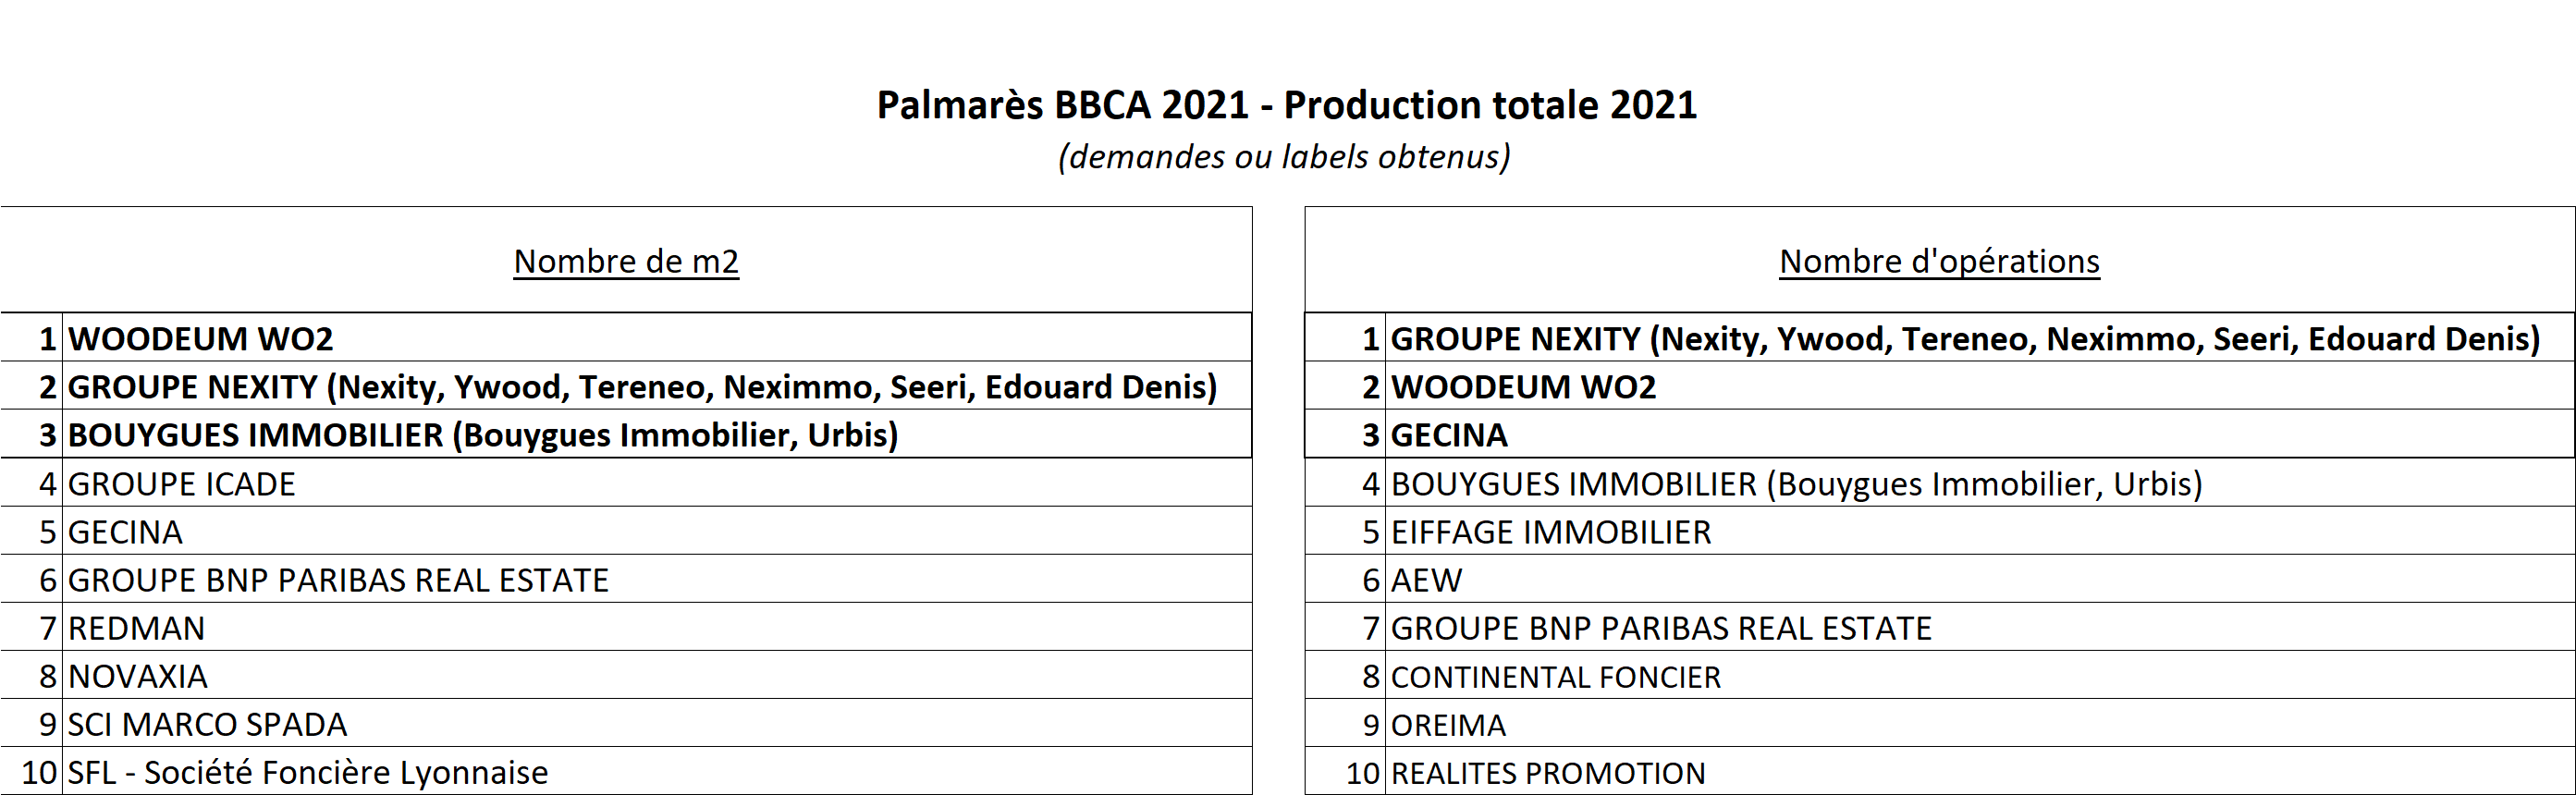 Palmarès BBCA 2021 - Classements Production totale 2021 - Source Association BBCA